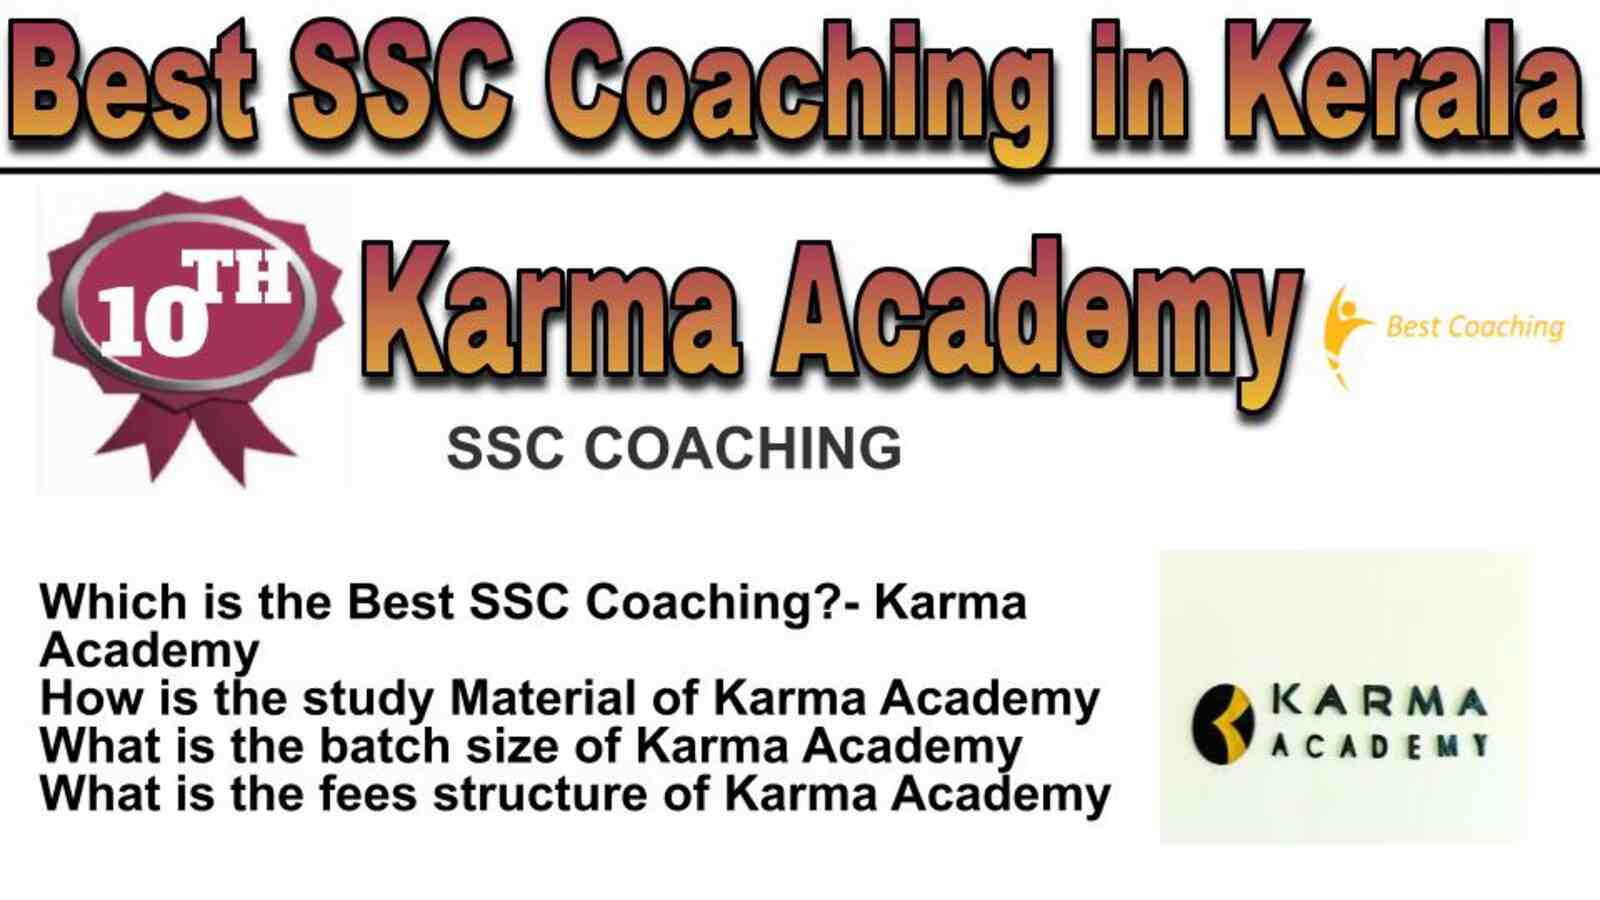 Rank 10 best SSC coaching in Kerala